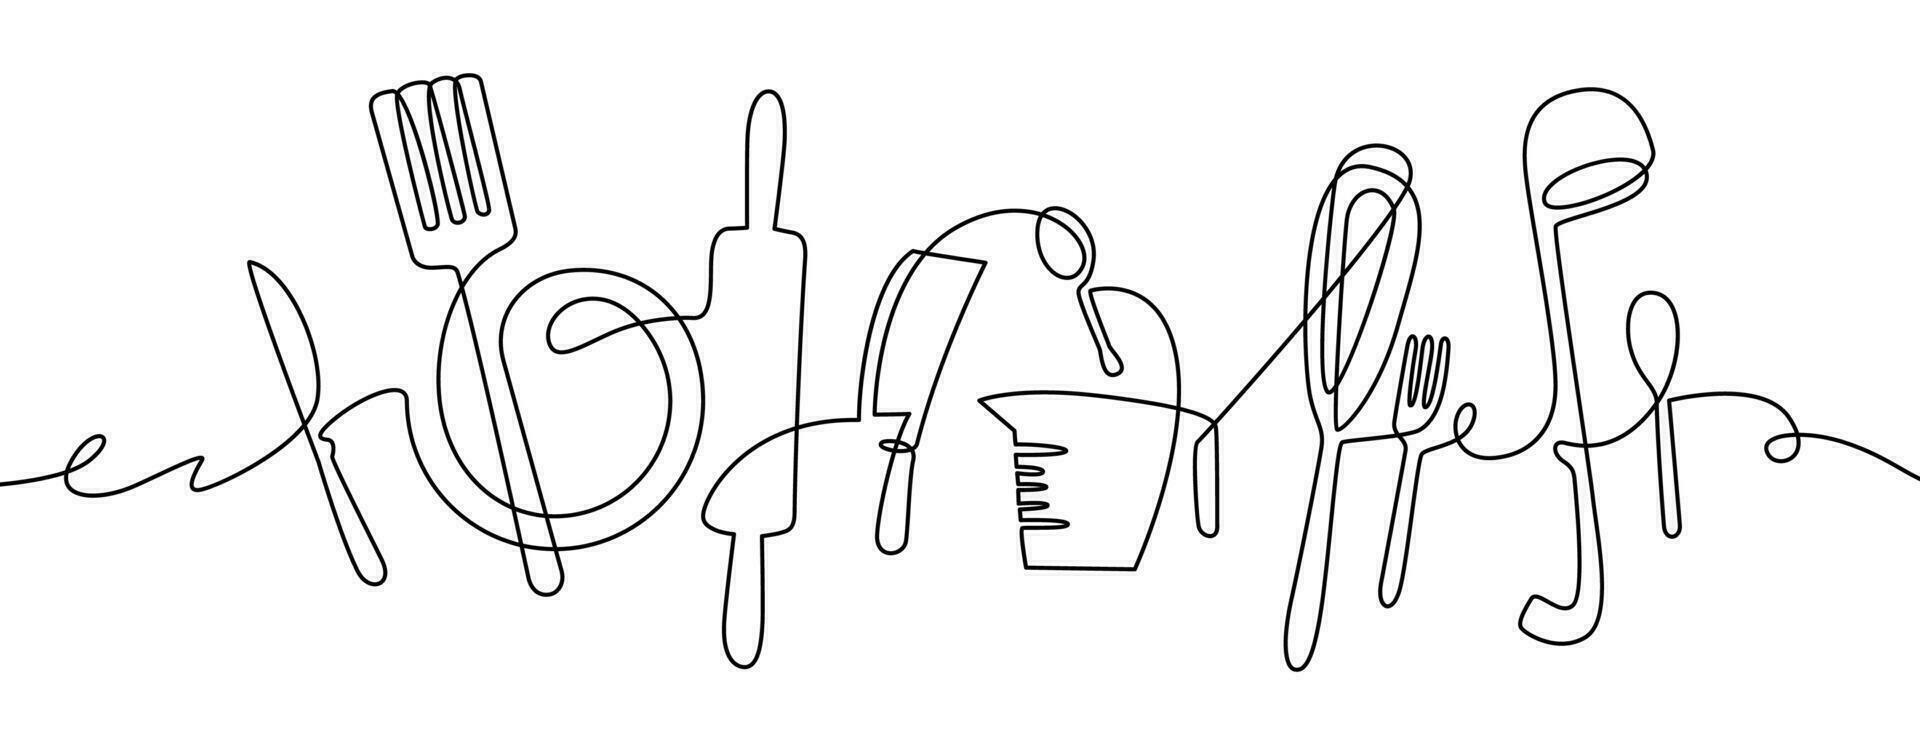 Küche Werkzeug. kontinuierlich einer Linie Zeichnung Küche Utensilien, Kochen Werkzeug Illustration, schwarz und Weiß Gliederung Besteck skizzieren Vektor Design